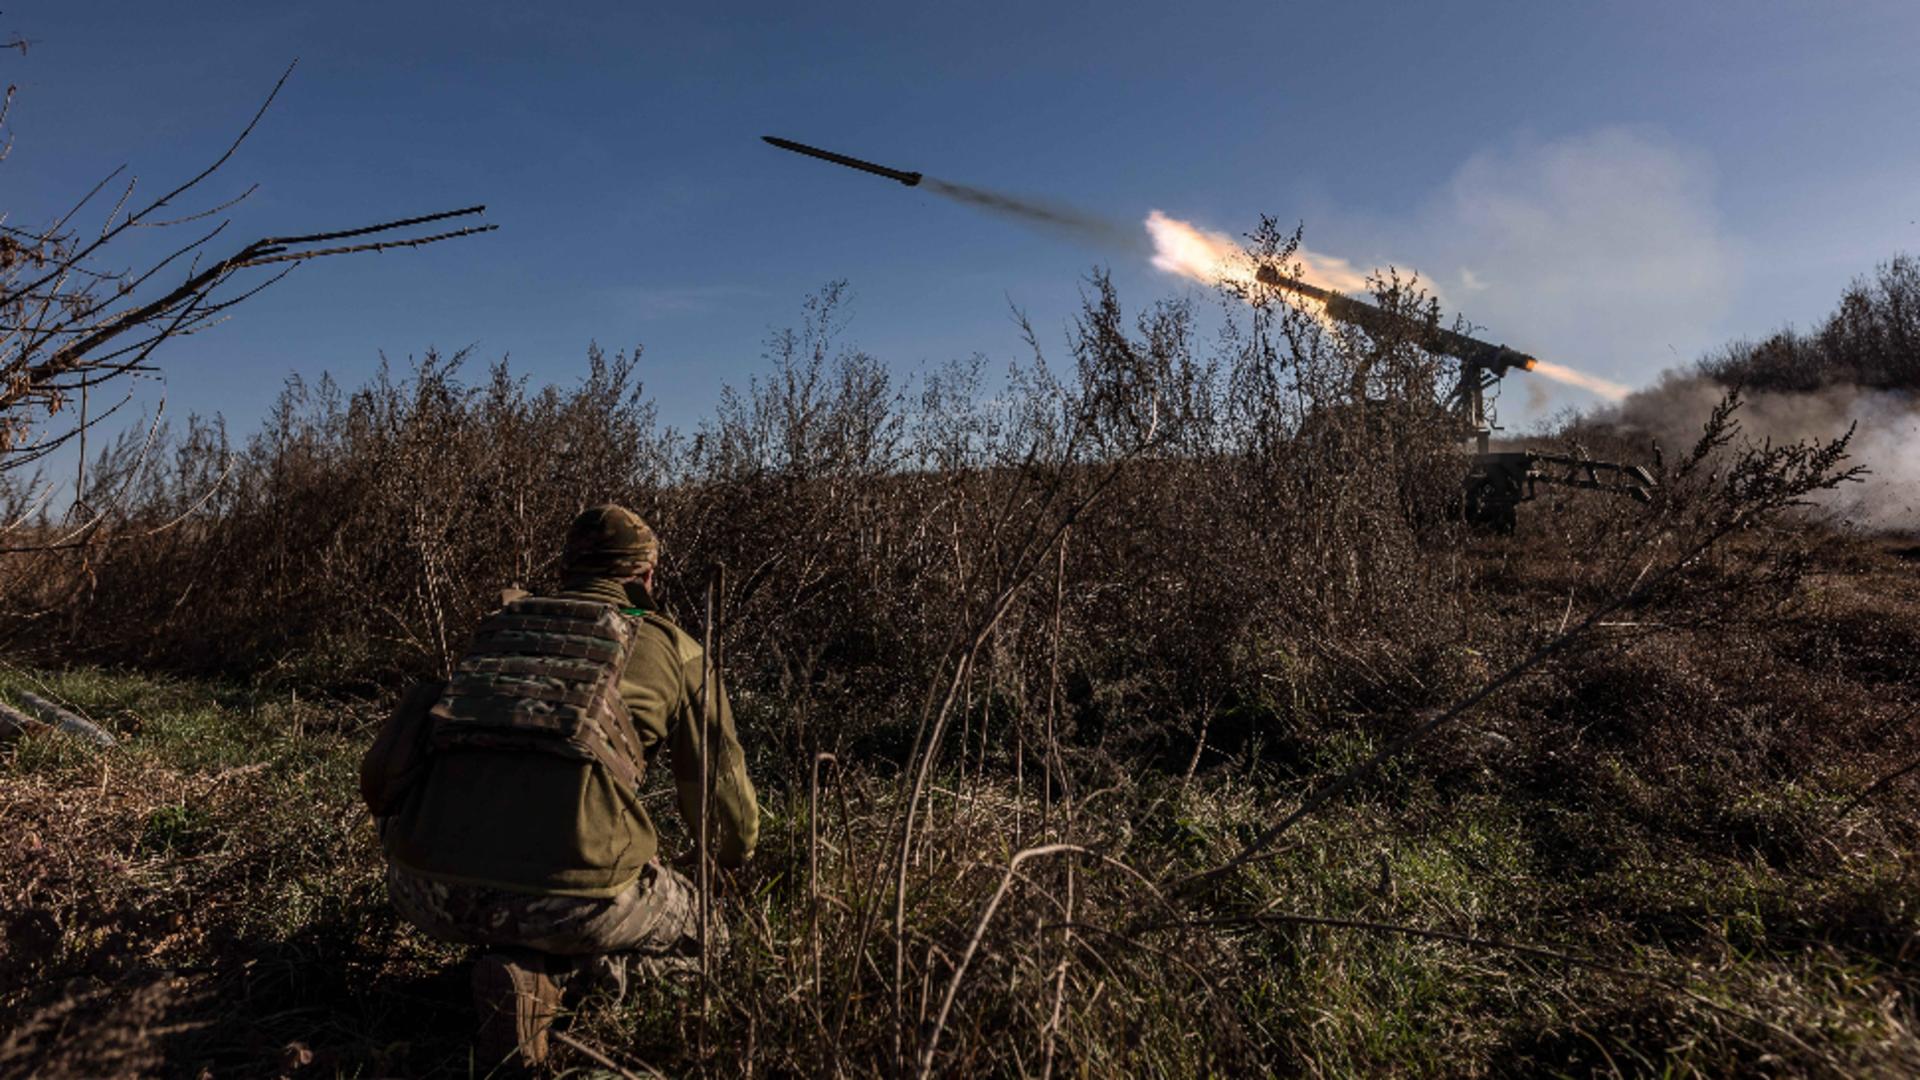 Război în Ucraina, ziua 699. Zelenski anunţă că Ucraina va produce armament în comun cu Polonia – LIVE TEXT